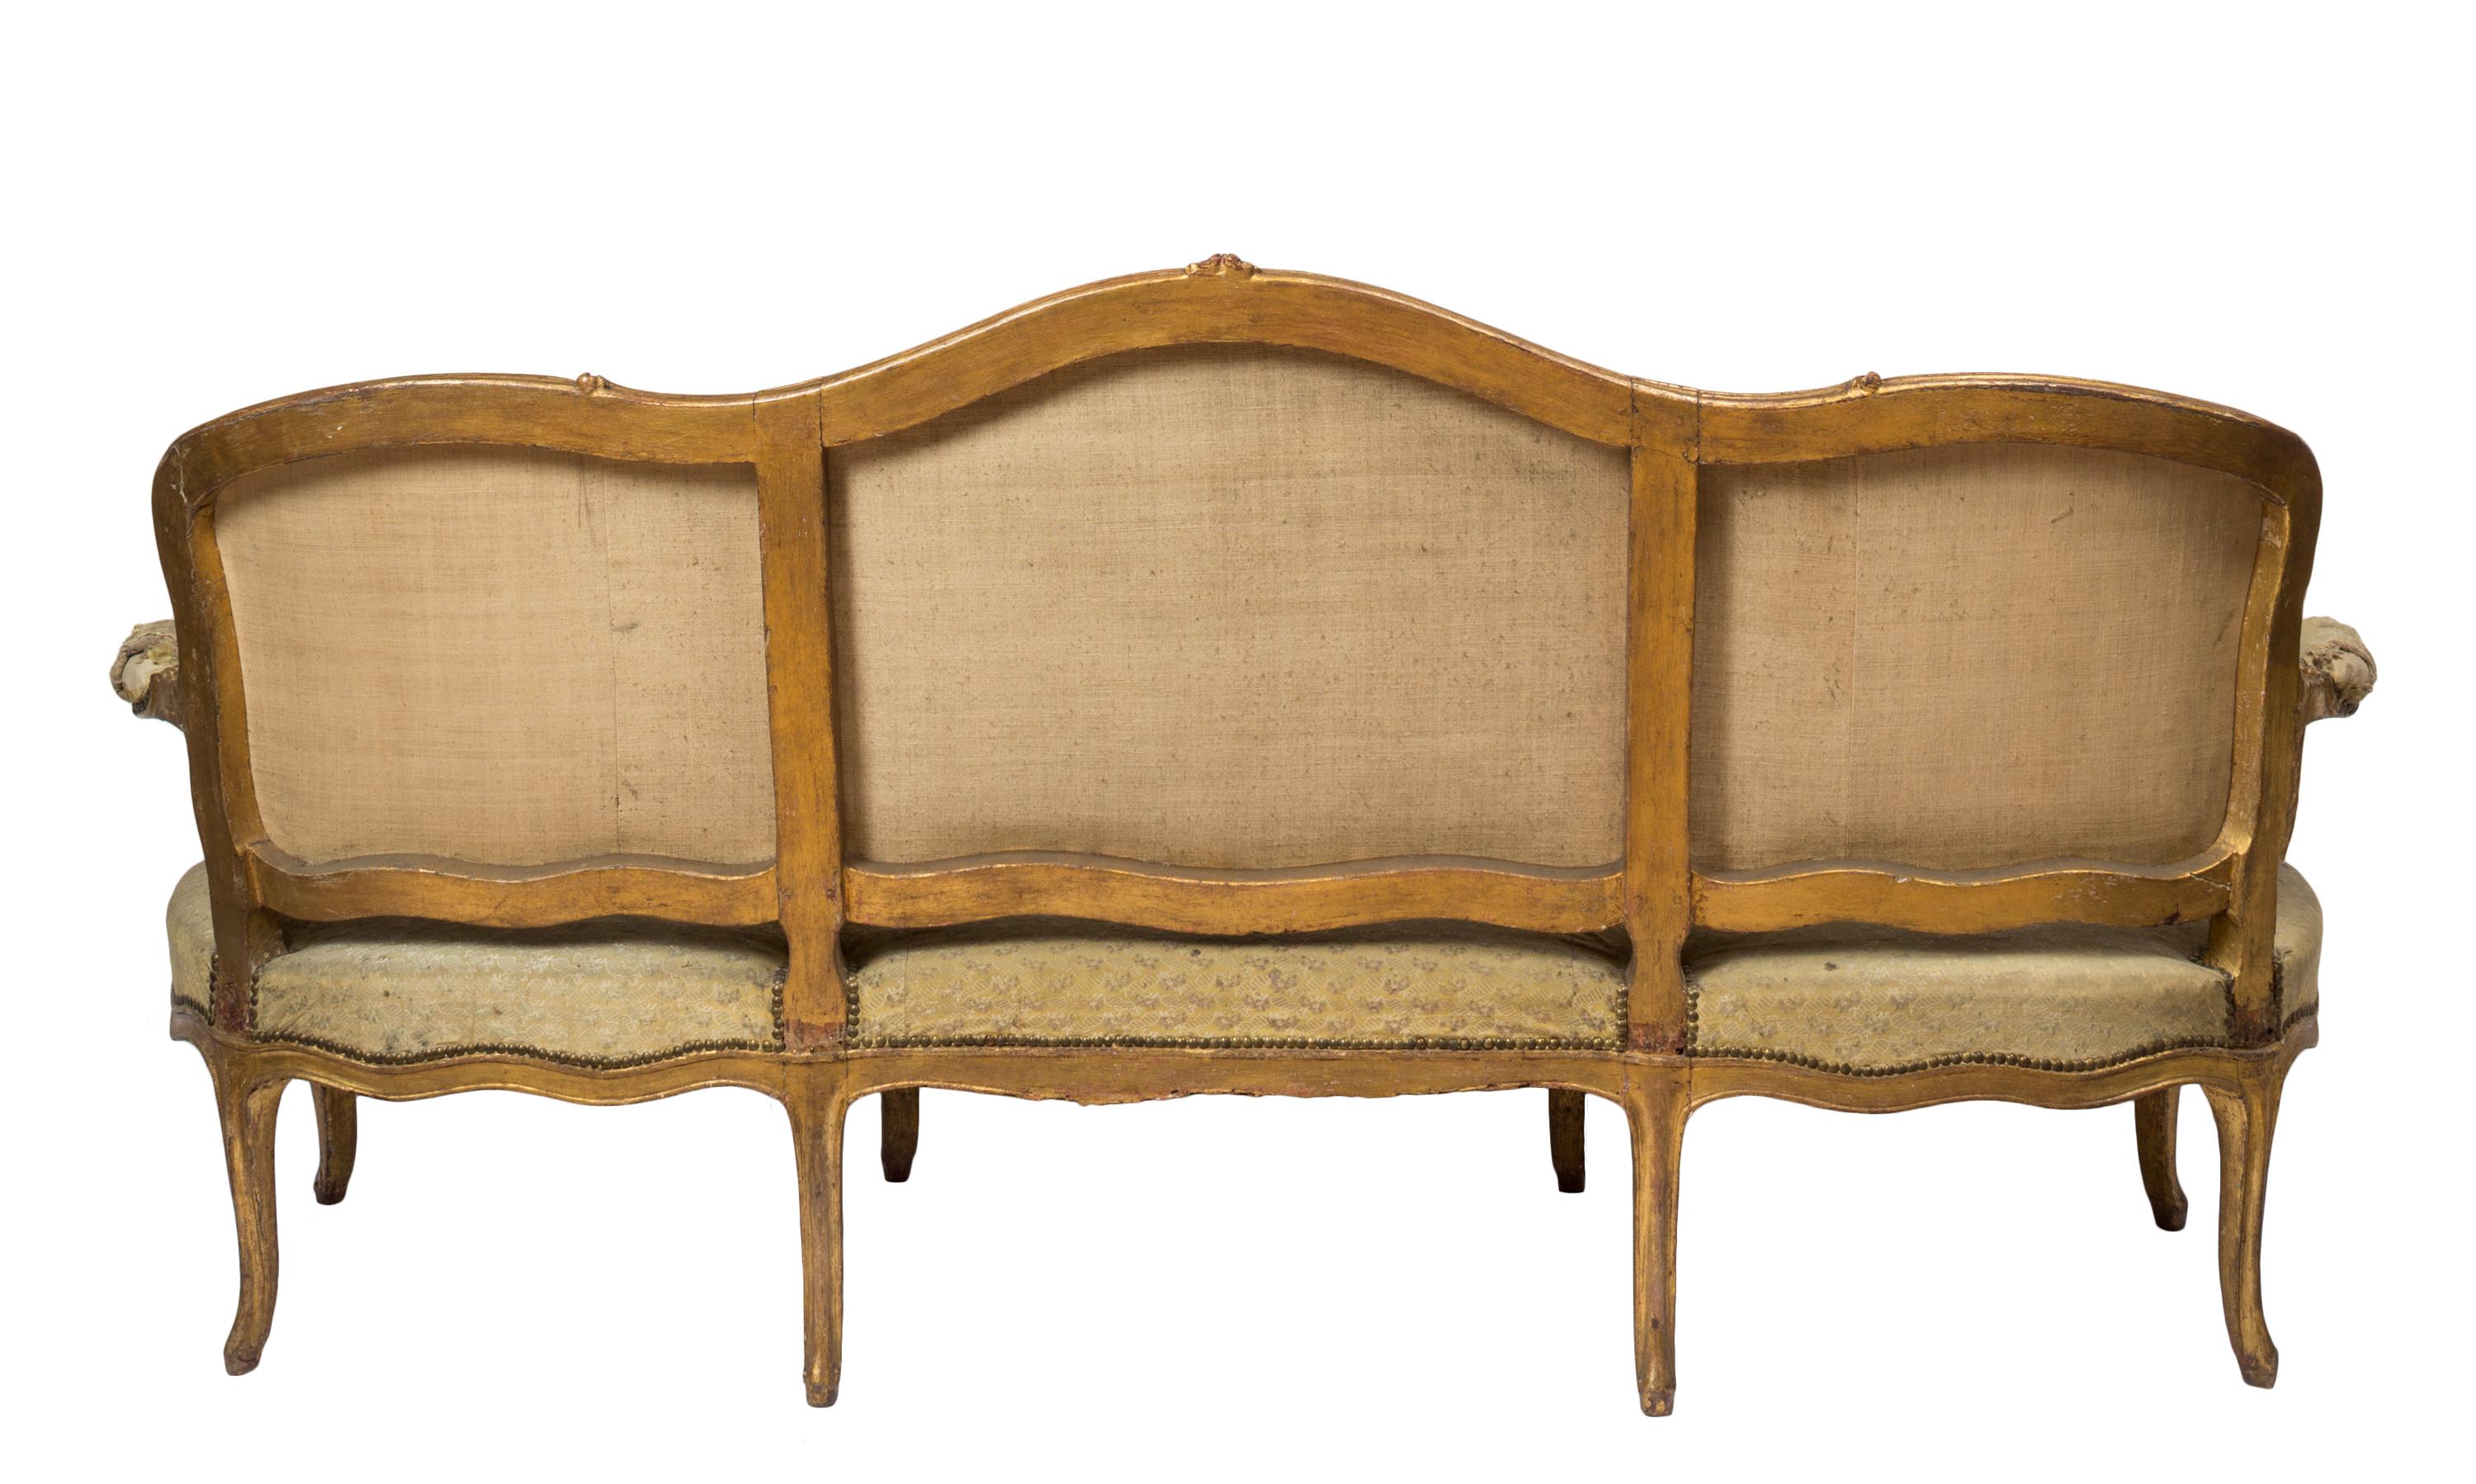 Ensemble de trois pièces, canapé / sofa / canapé de style Louis XV de la fin du XVIIIe siècle et deux fauteuils assortis. Le canapé peut accueillir trois personnes. Unique et remarquable, les trois pièces de cet ensemble sont tapissées dans leur